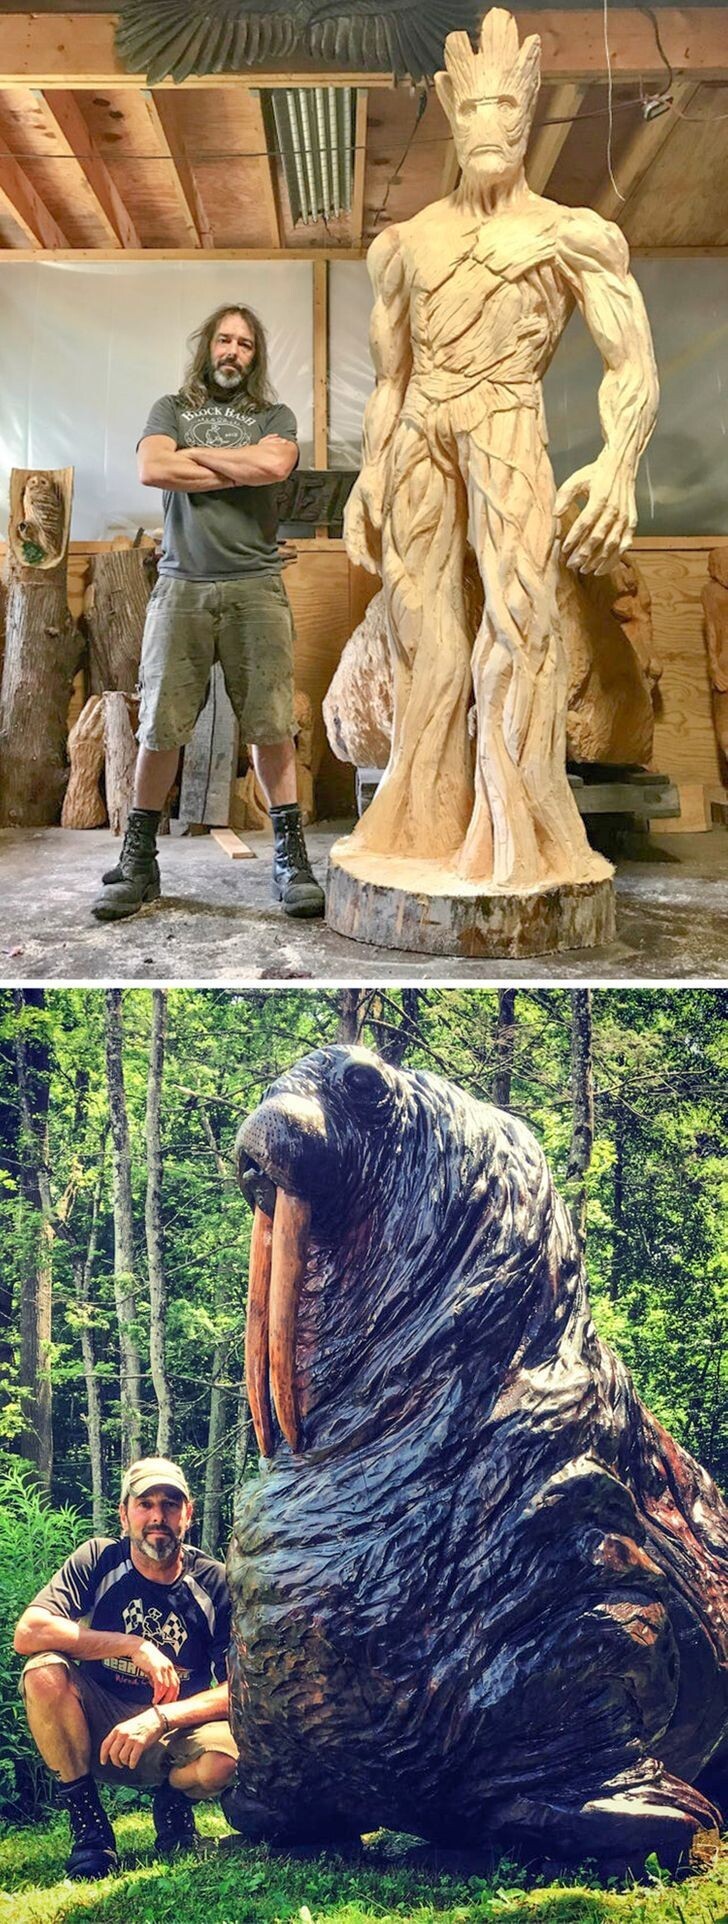 "Взгляните на мои деревянные скульптуры!"